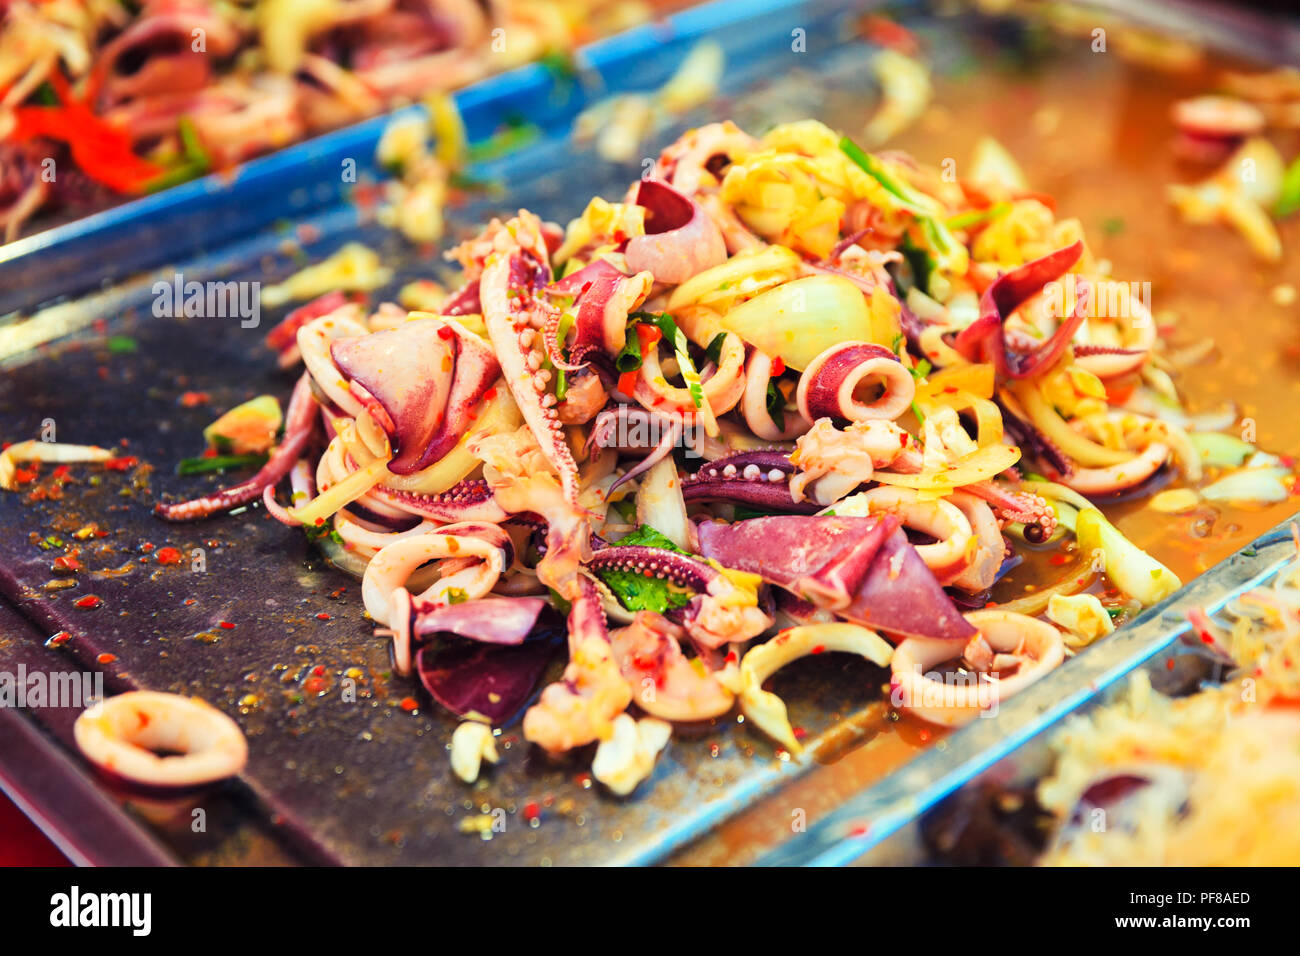 FoodTravel: Thai Food besten Gerichte zu Essen in Thailand - Kultur Reise Stockfoto